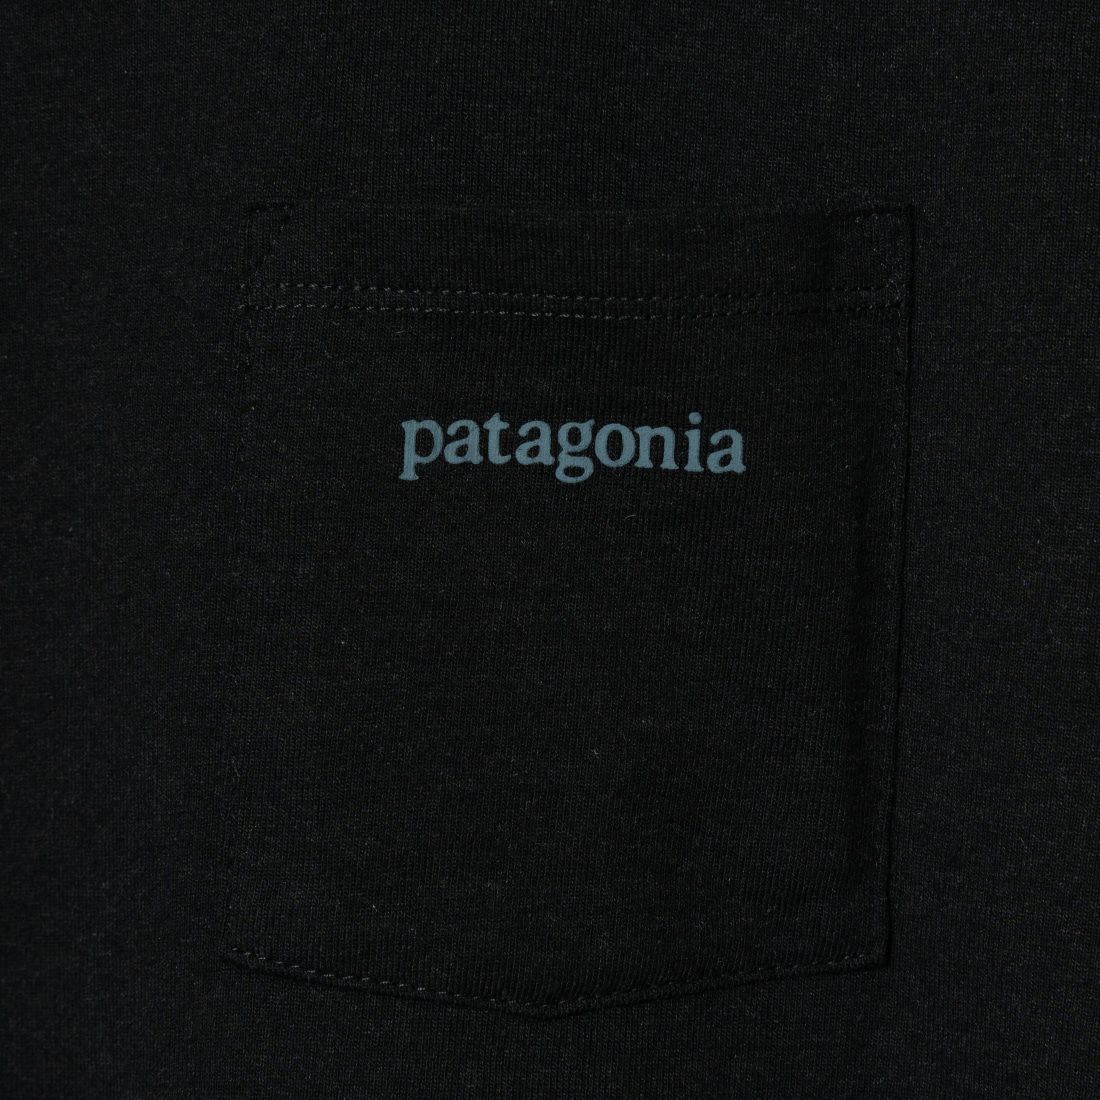 patagonia [パタゴニア] ラインロゴリッジ ポケットレスポンシビリティー [38511] INBK